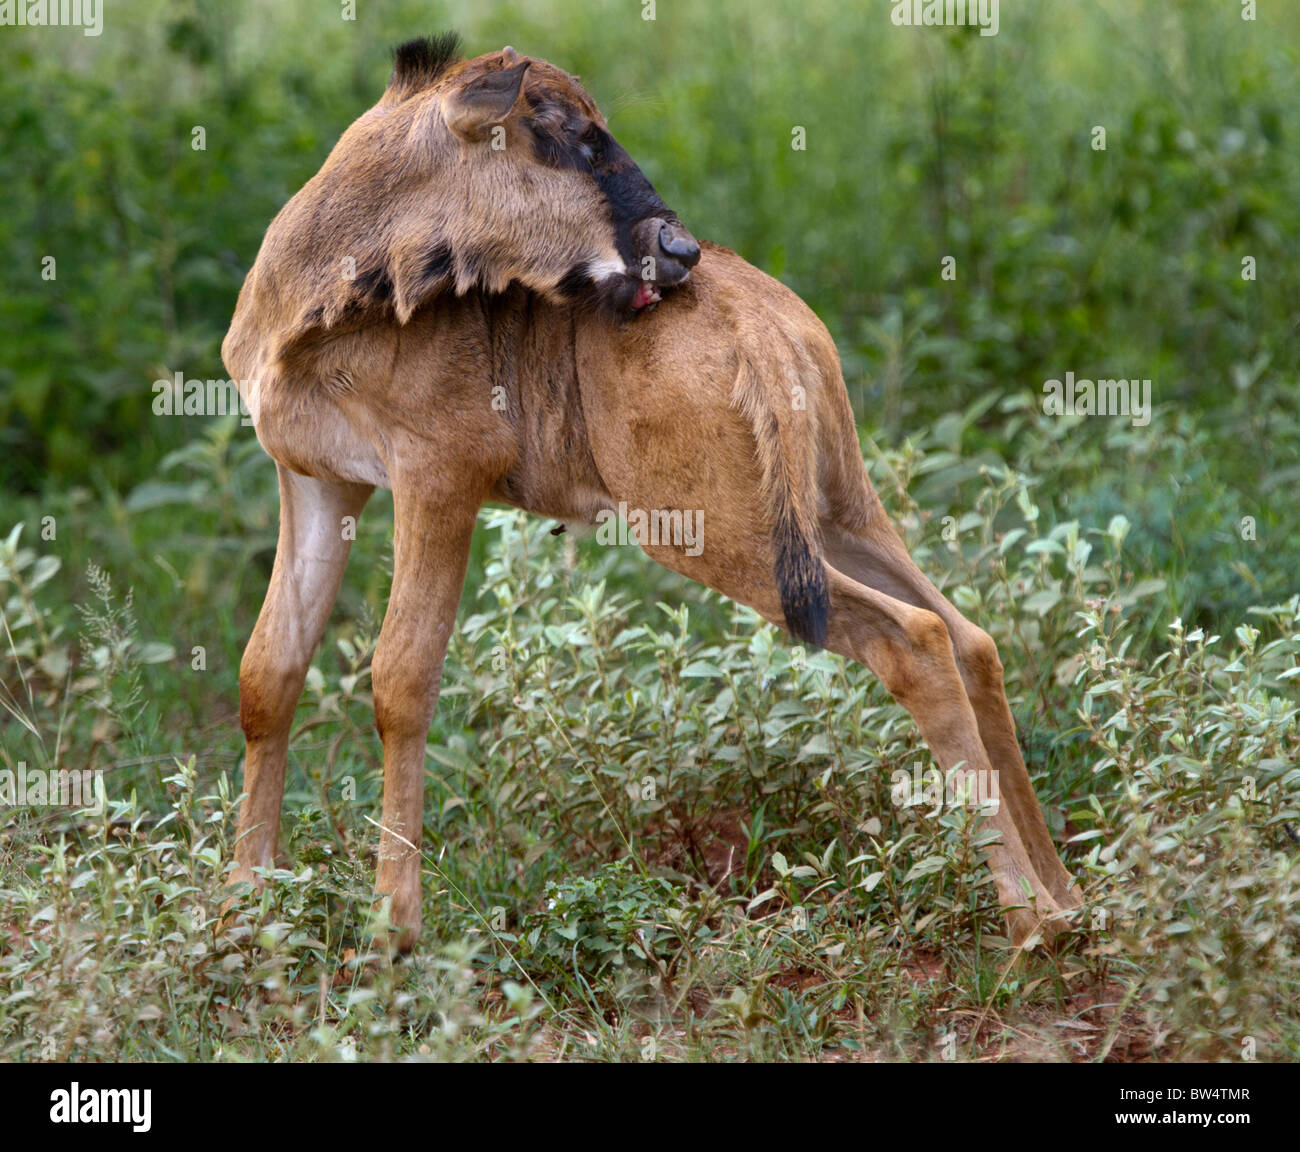 Giorno-vecchio blu GNU (Connochaetes gnou) leccare stesso Foto Stock